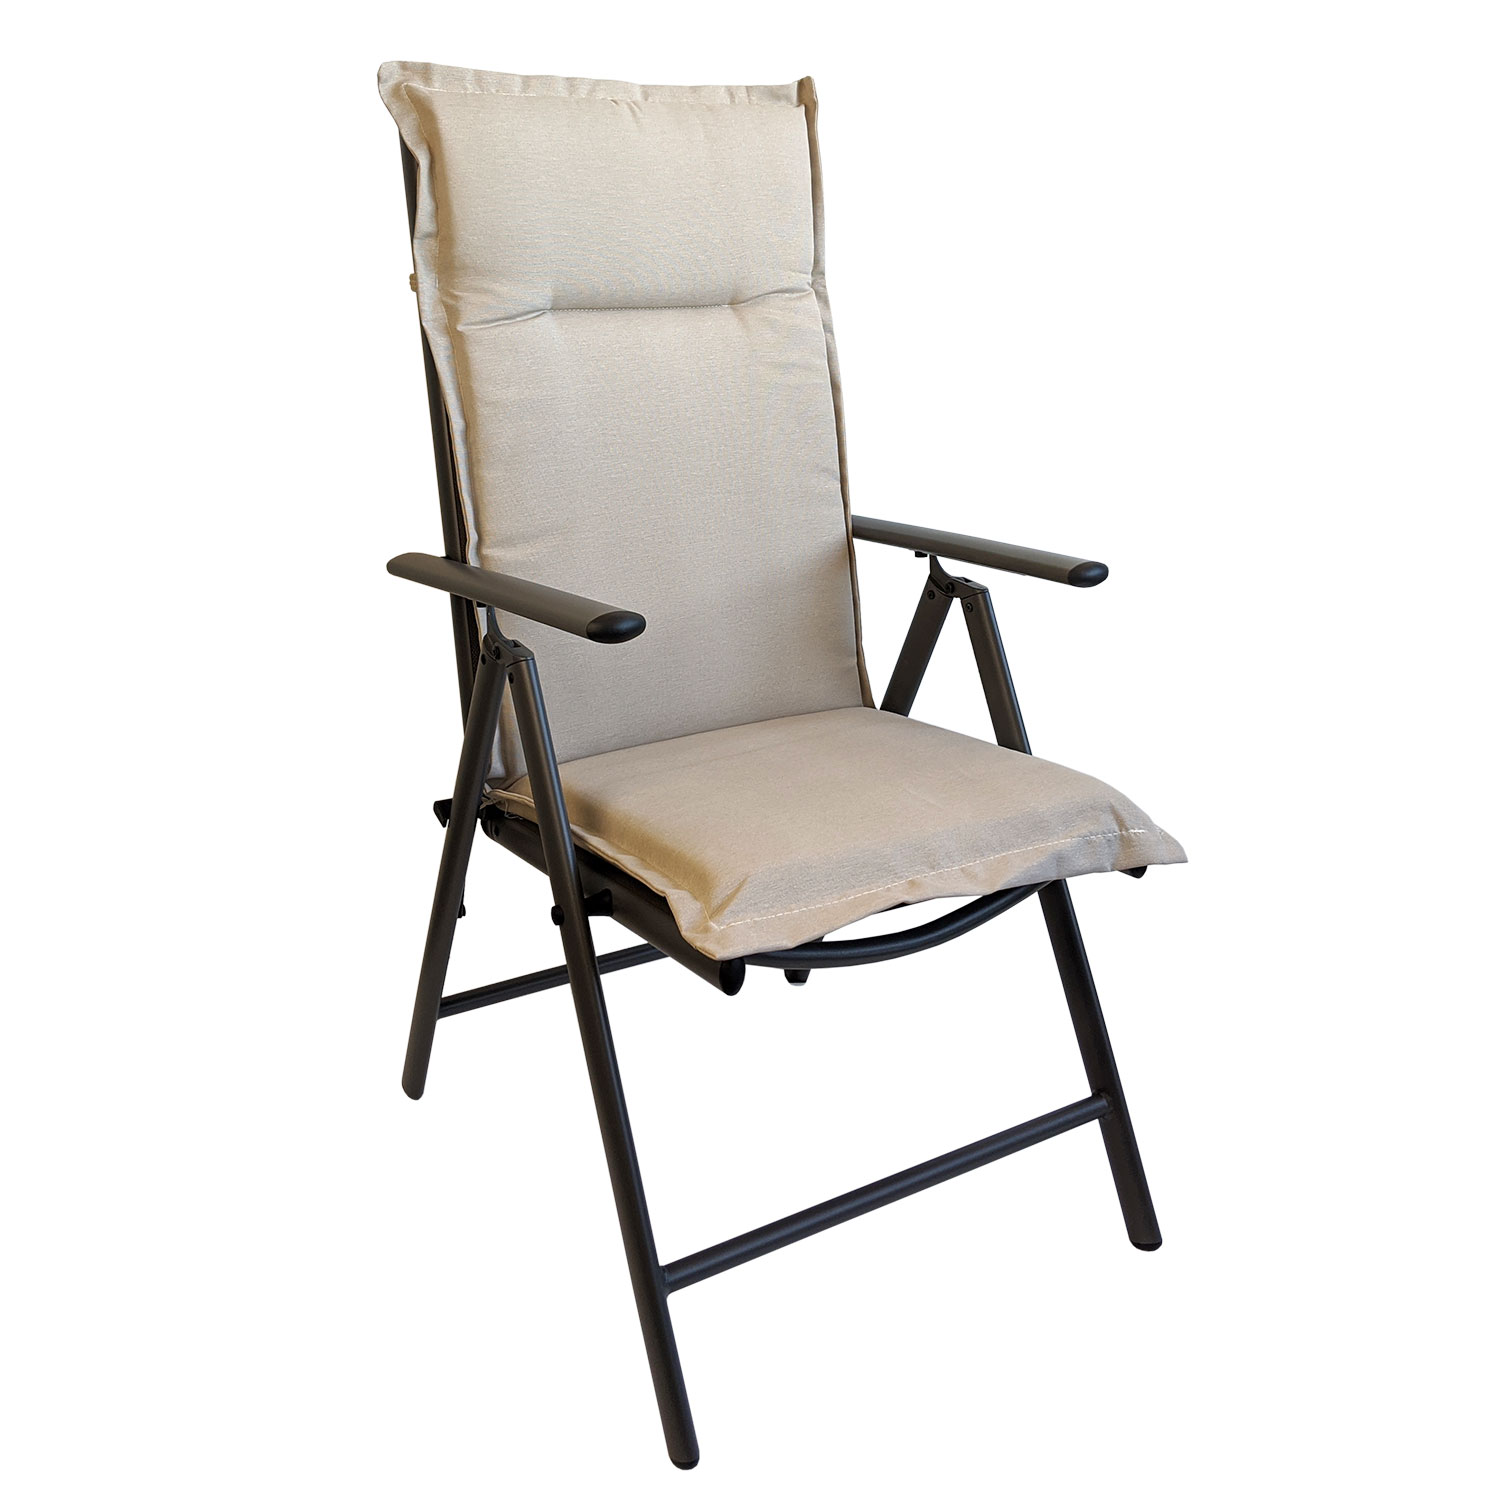 Garten Hochlehner Sitzpolster Stuhlauflage Sitzauflage 120x50cm gestreift 